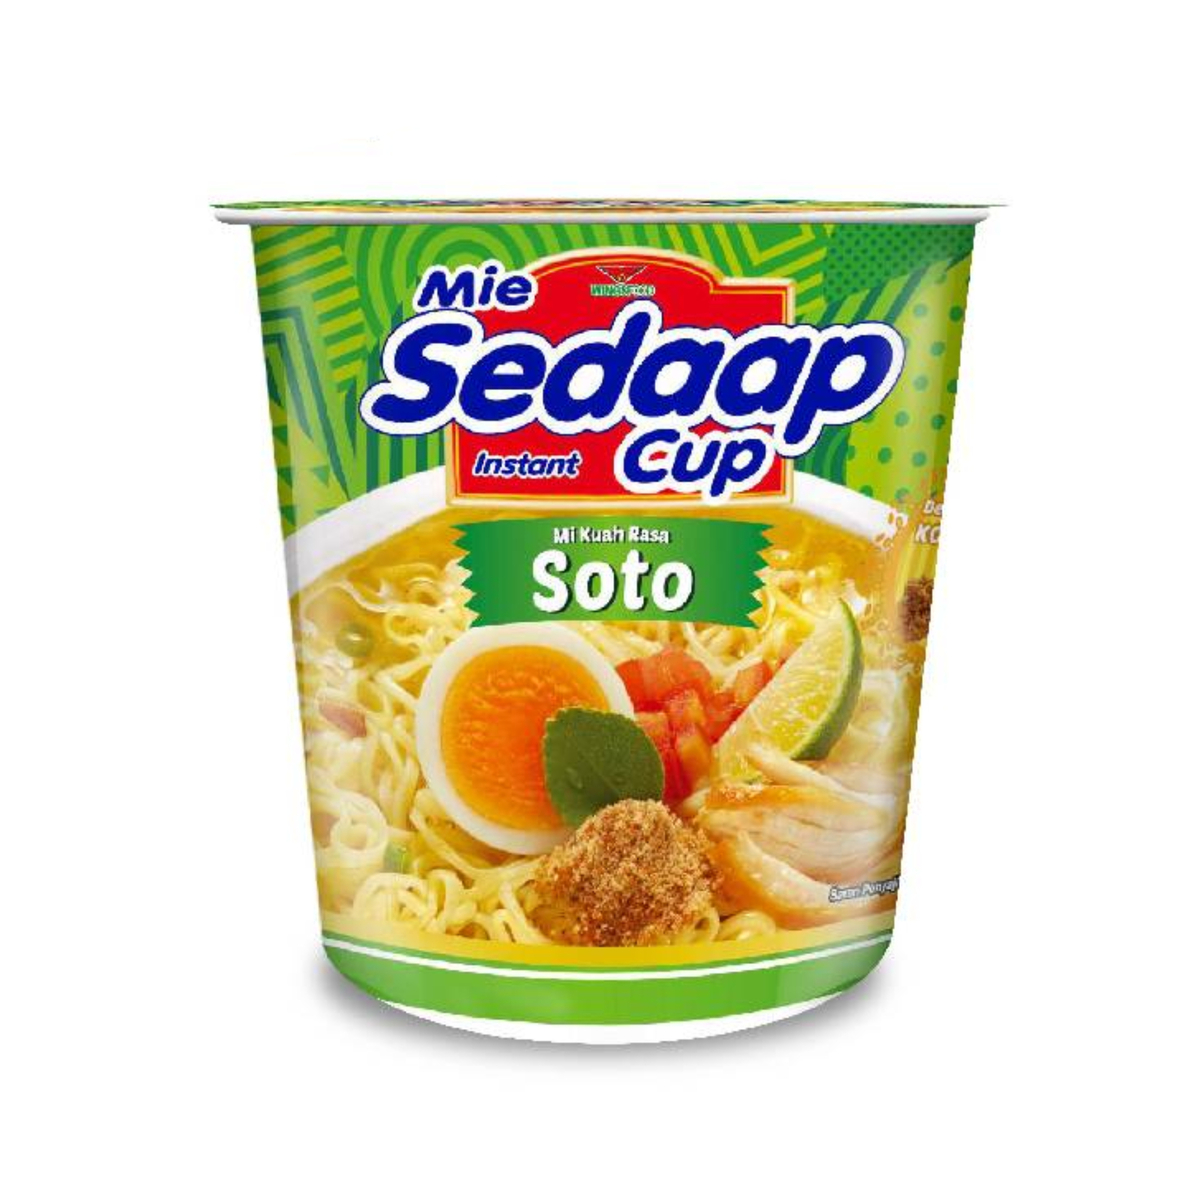 Sedaap Cup Noodle Soto 81g